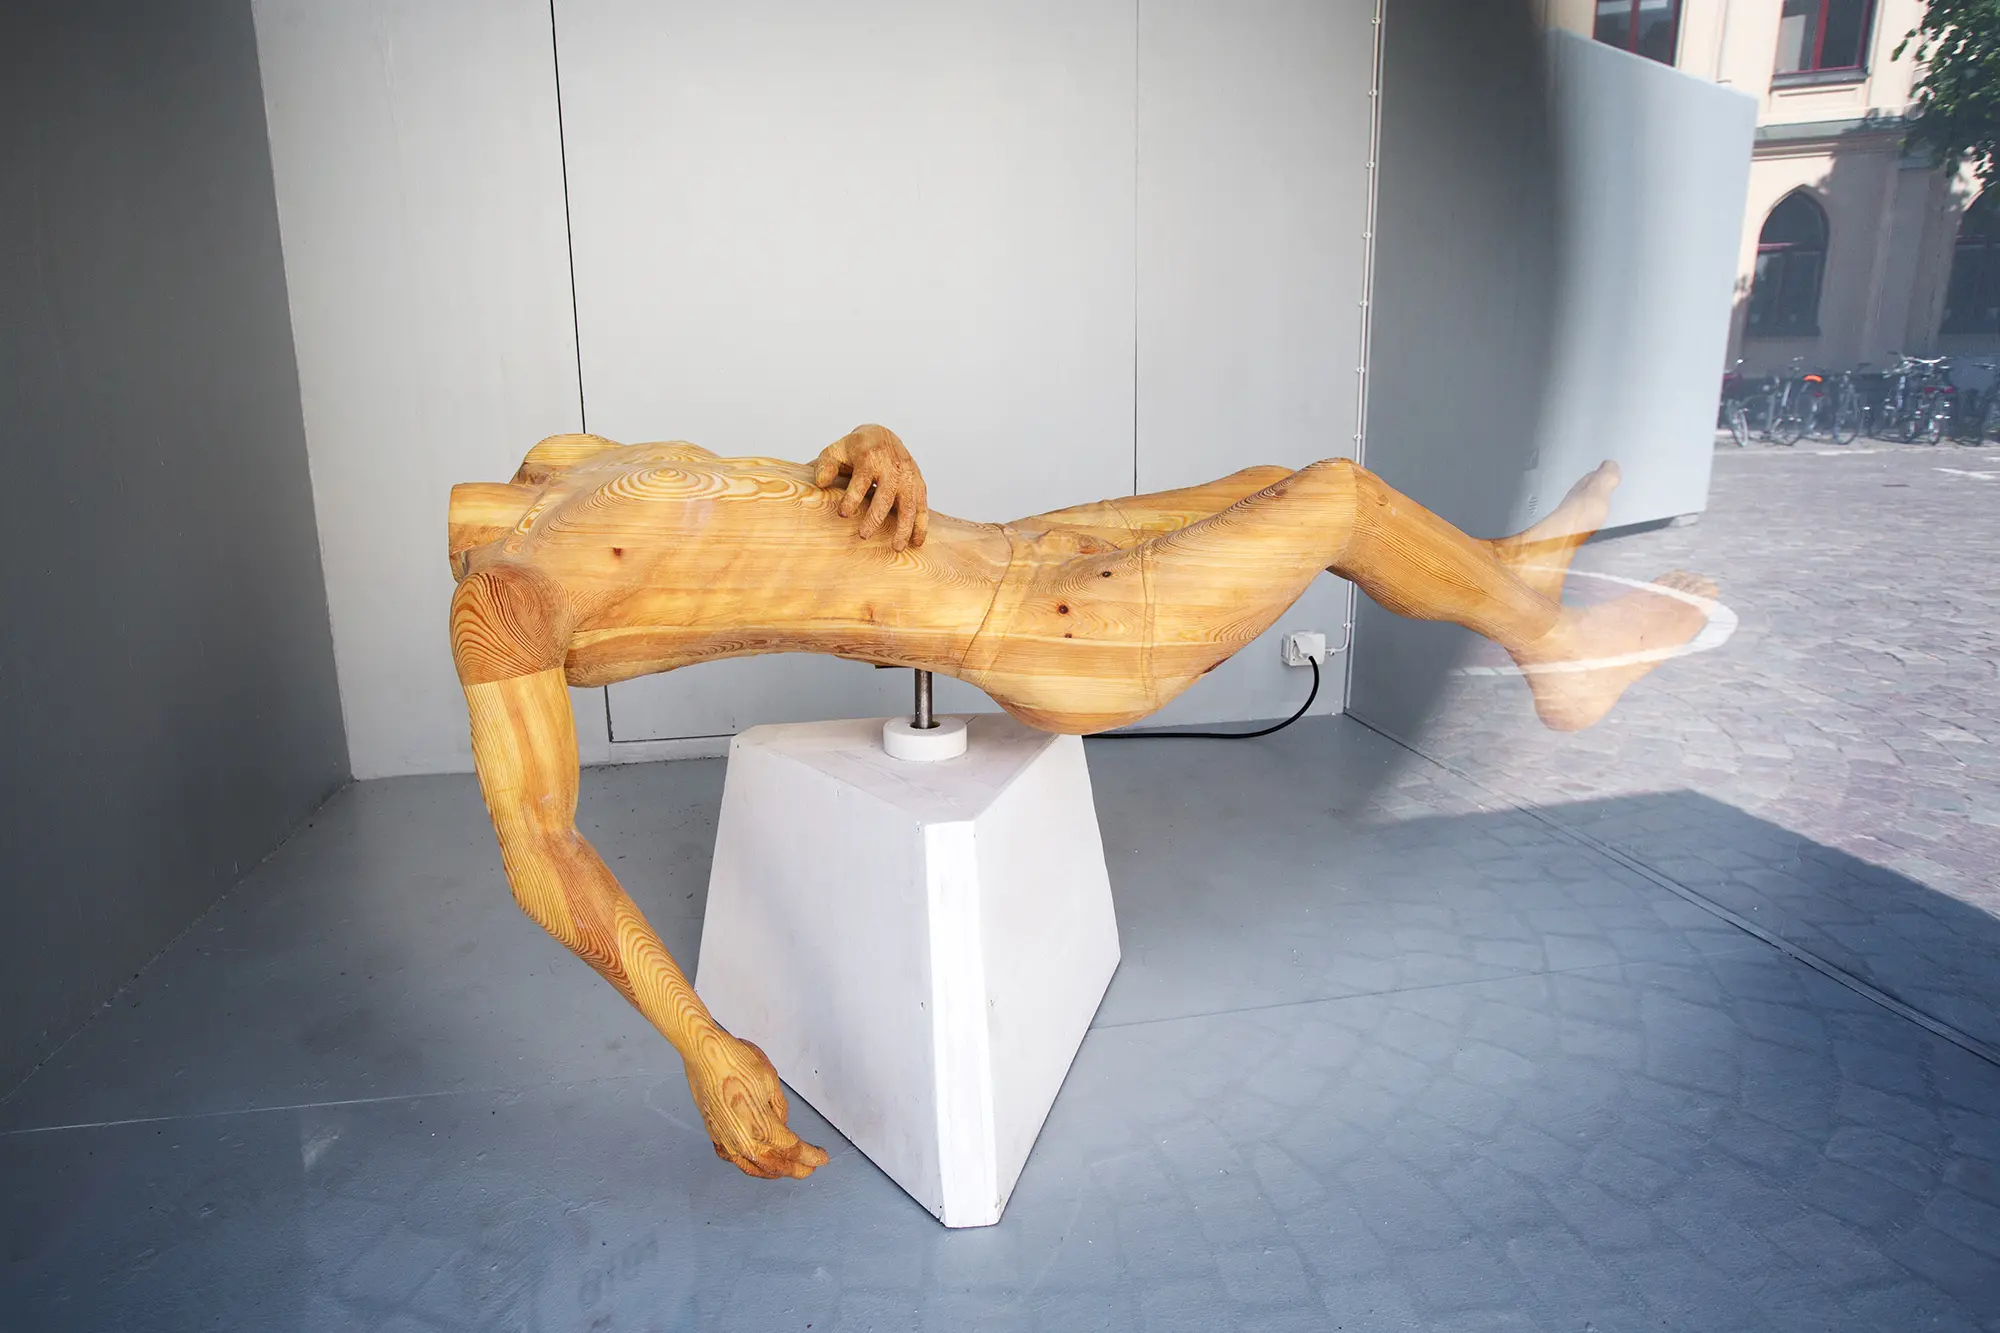 I en glasmonter syns en skulptur av trä. På en ljusgrå träplattform balanserar en liggande människoformad skulptur utan huvud på en plattform. Träet är ljusgult och skulpturen vilar den ena handen på magen och den andra hänger ned mot golvet.